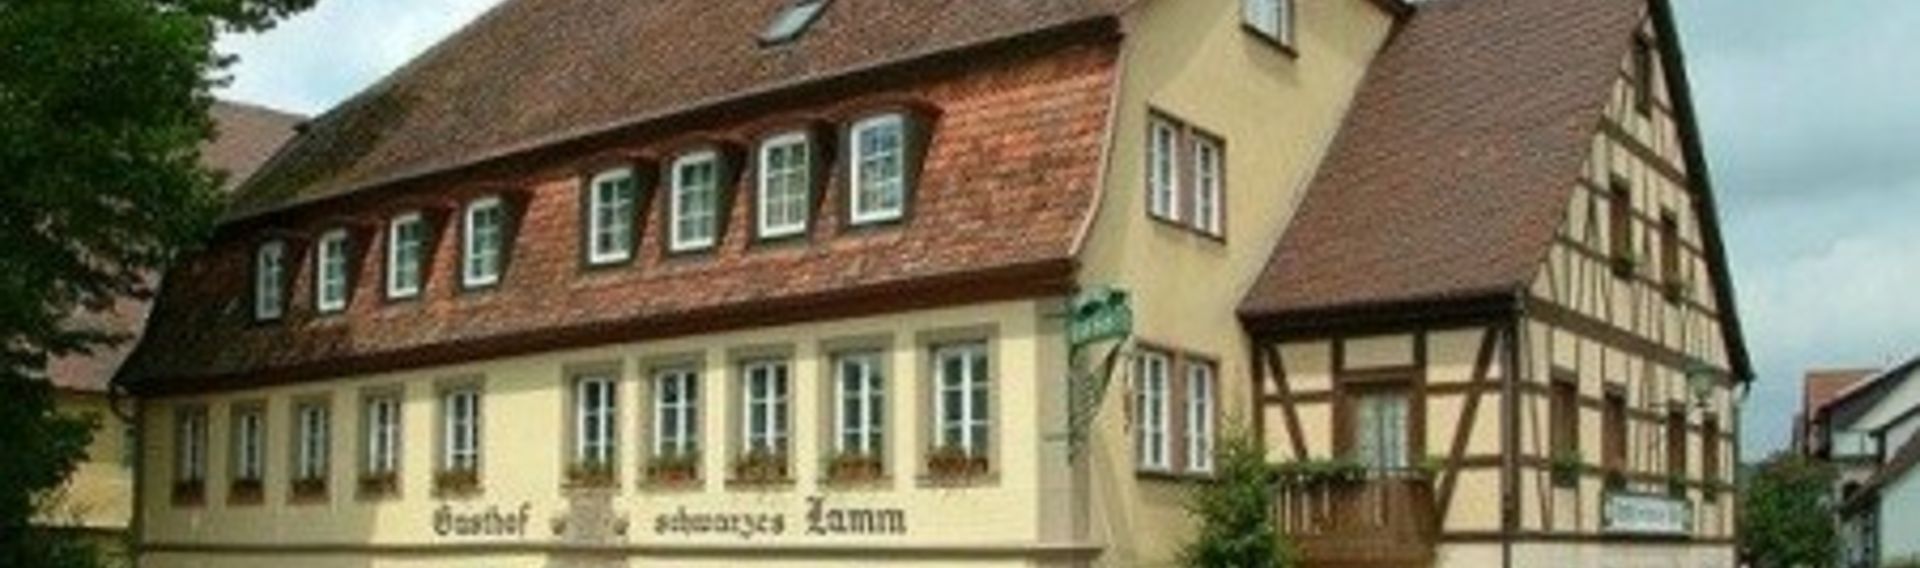 Hotel und Restaurant in Detwang bei Rothenburg ob der Tauber – Schwarzes Lamm